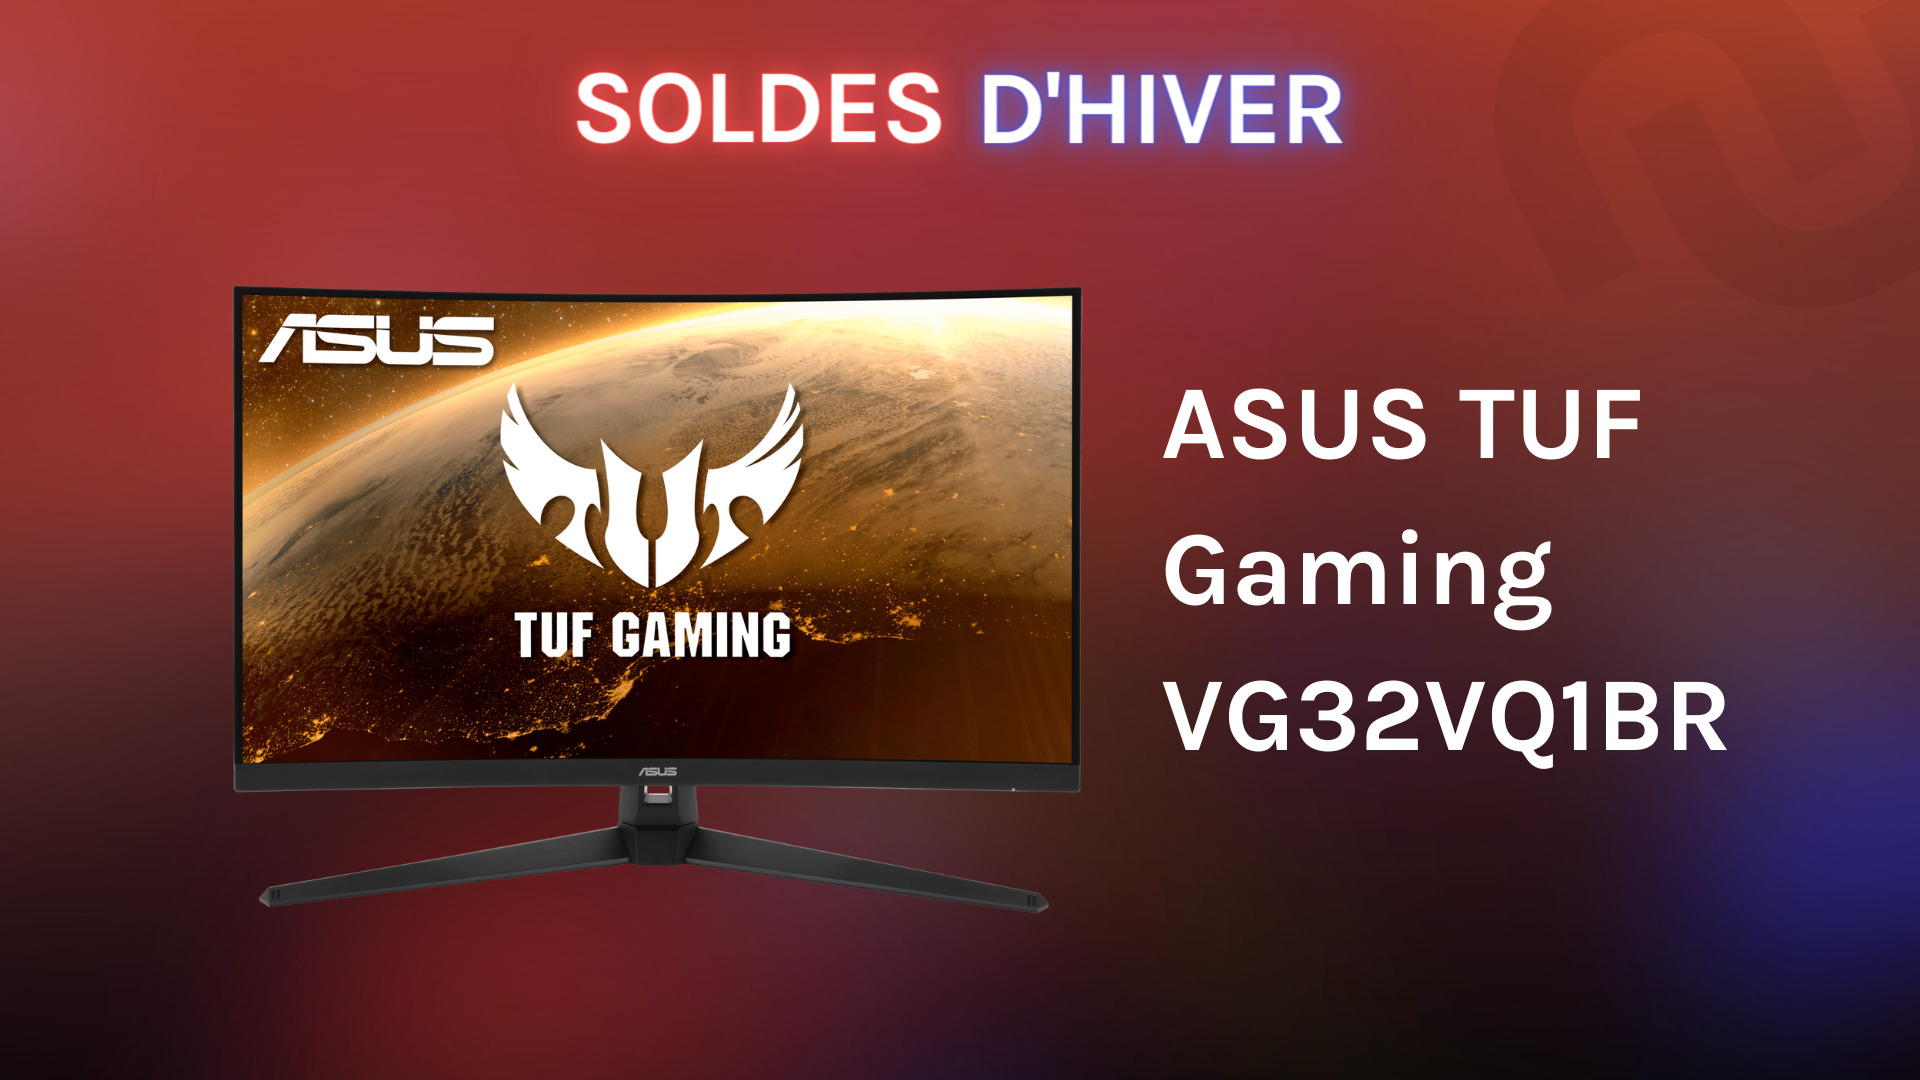 Prix bas pour cet écran PC Asus TUF Gaming de 27 pouces (165 Hz et 1 ms)